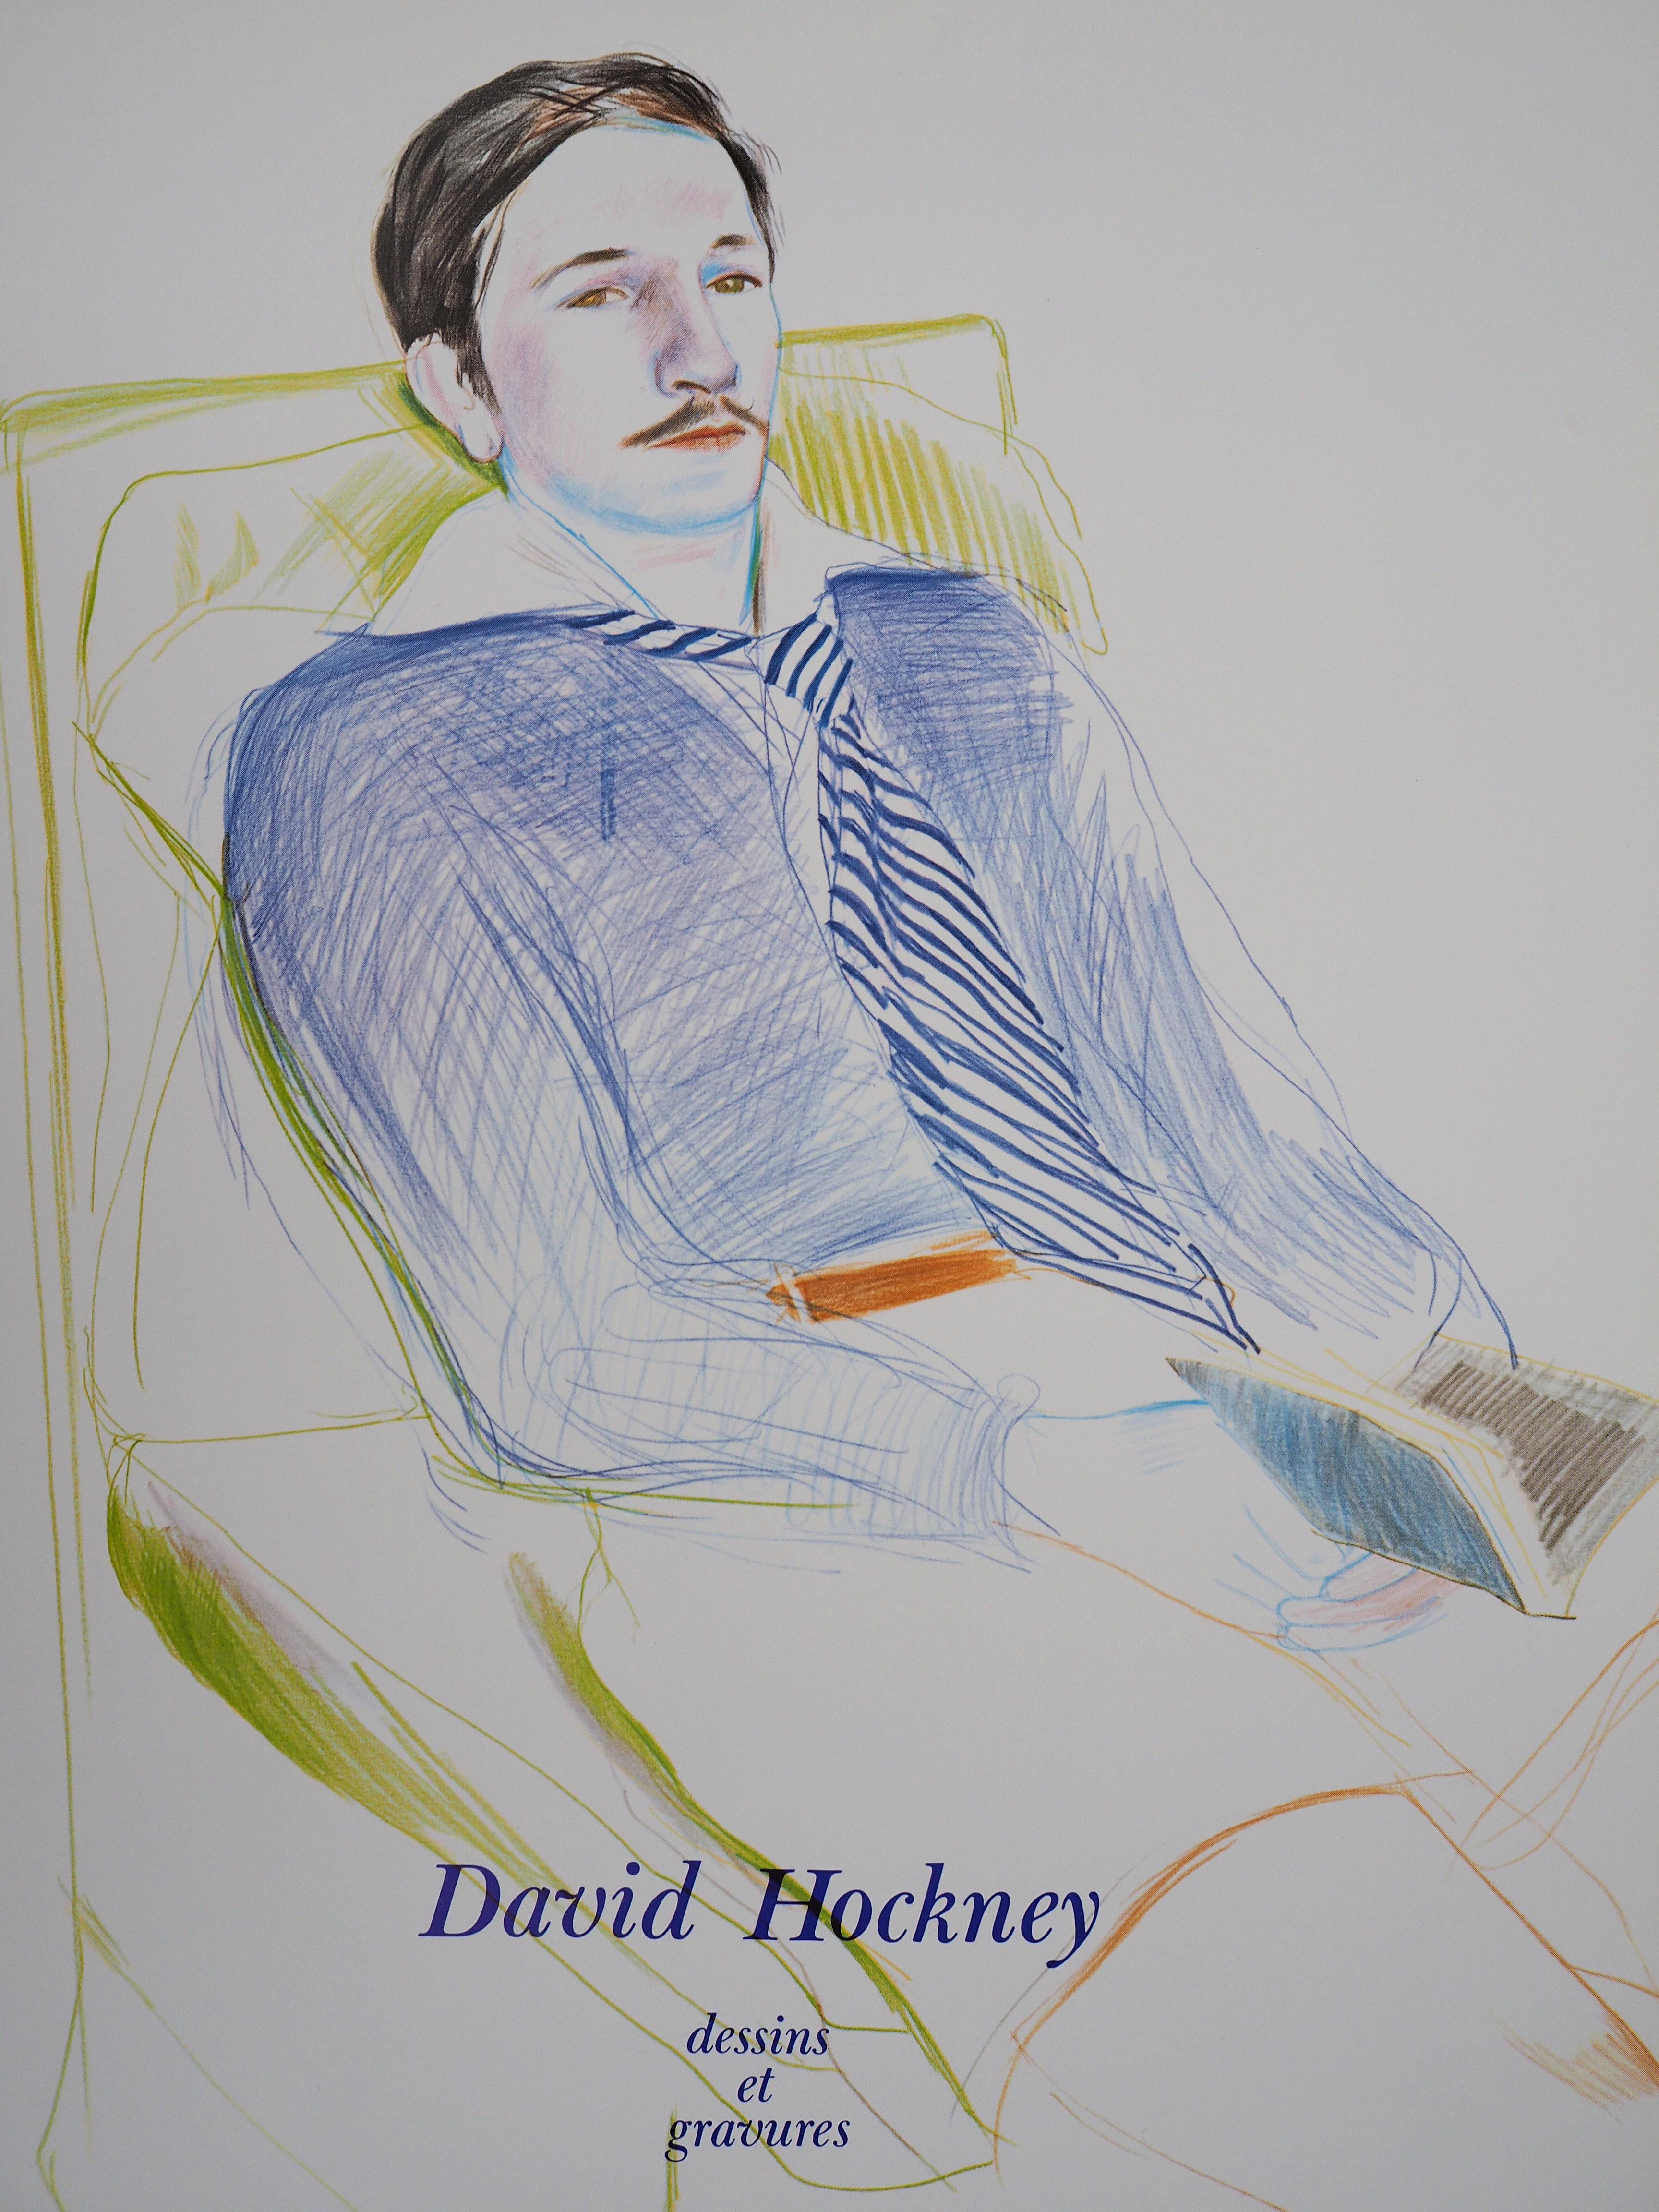 (after) David Hockney Portrait Print - Portrait of Reading Man - Original Vintage Poster (1975)